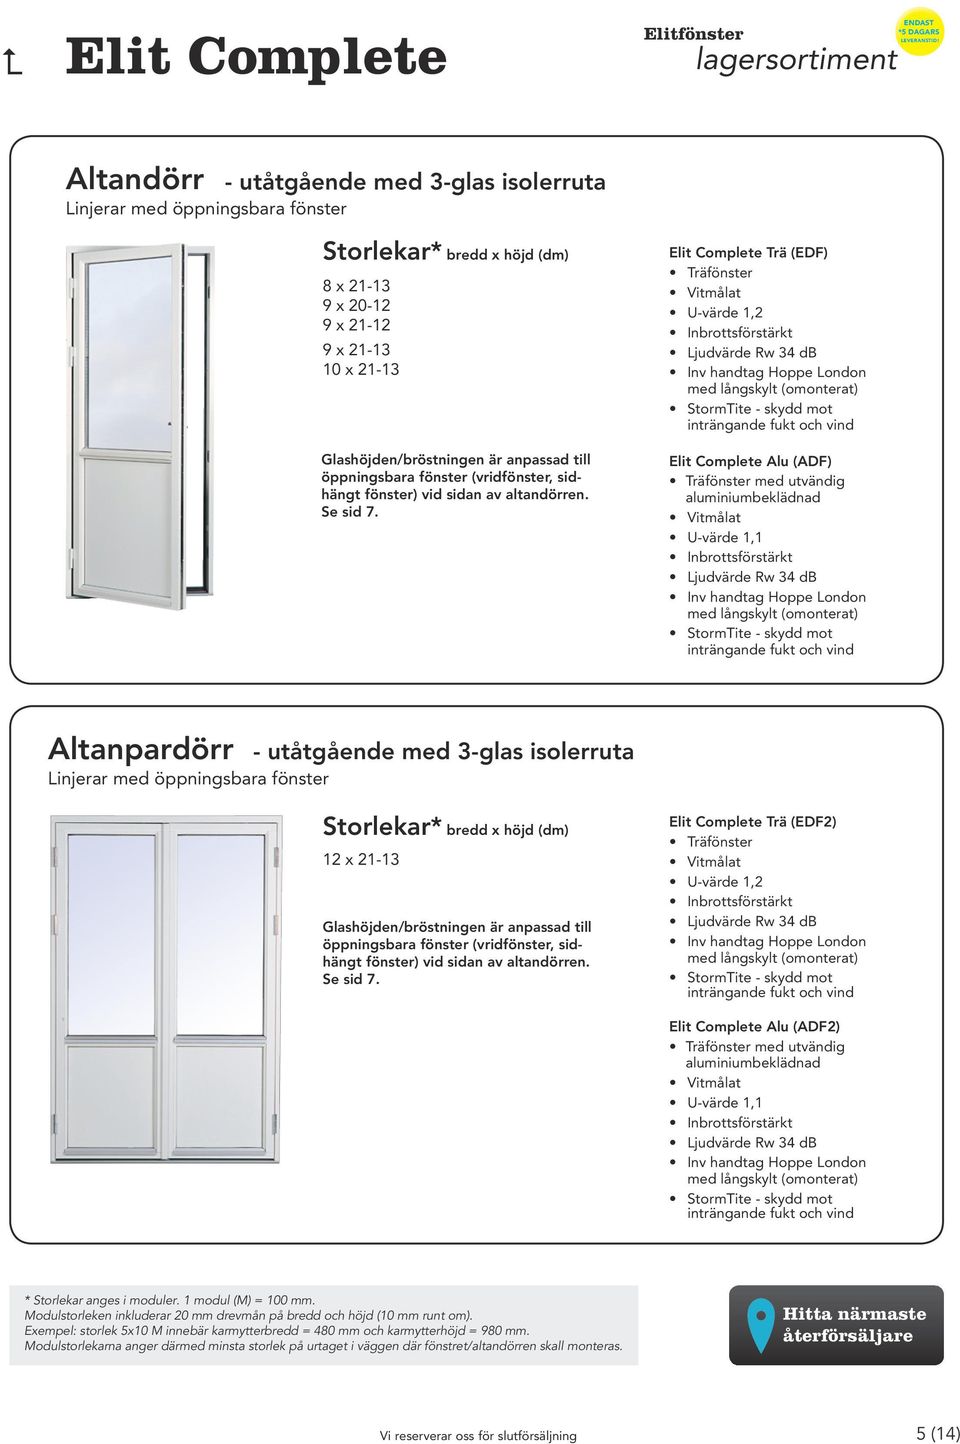 Trä (EDF) Alu (ADF) med utvändig Altanpardörr Linjerar med öppningsbara fönster - utåtgående med 3-glas isolerruta 12 x 21-13  Trä (EDF2)